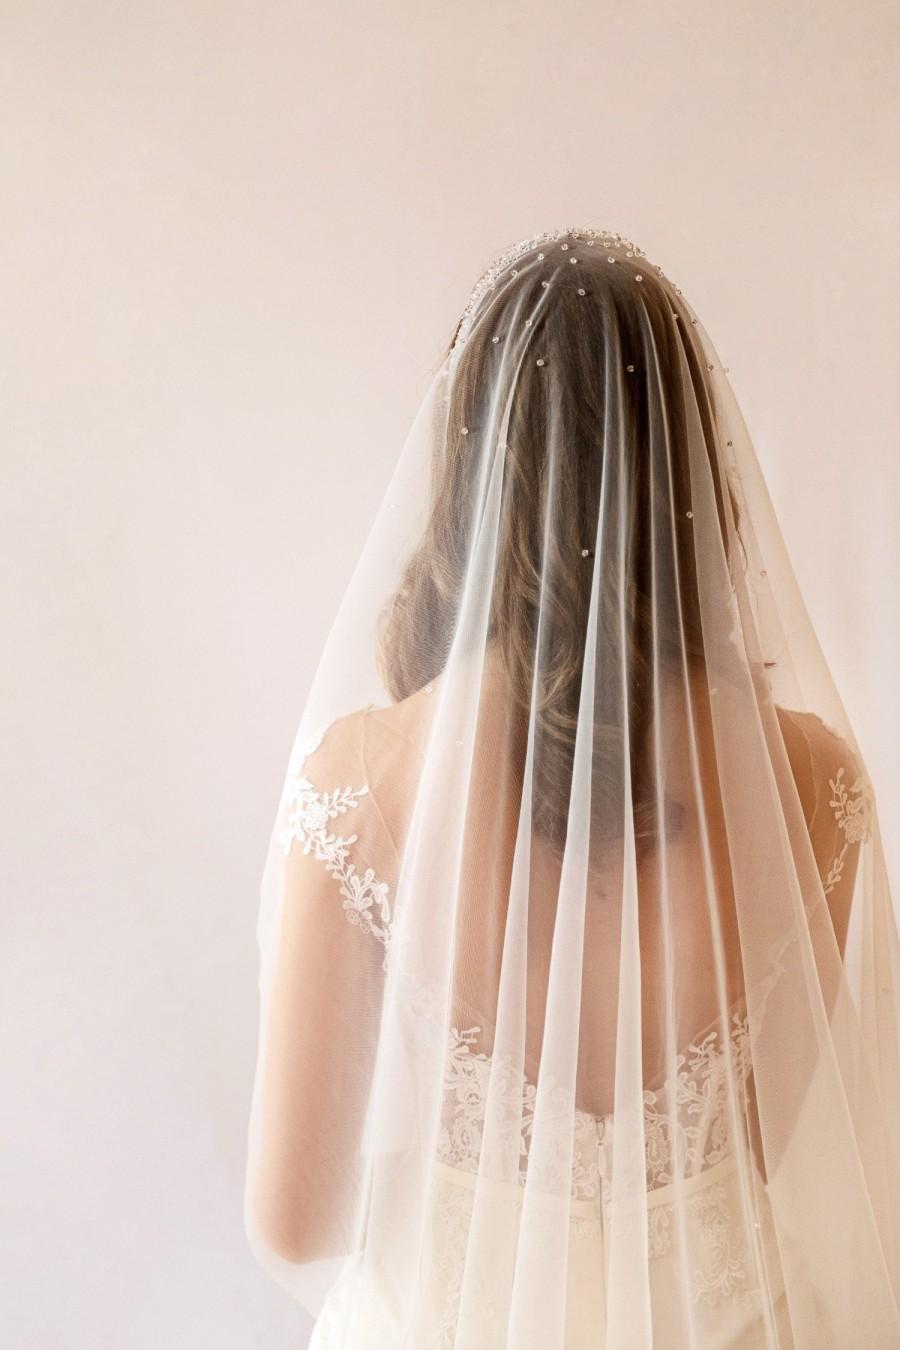 زفاف - Juliet cap wedding veil, vintage veil, crystal detailed veil - romantic wedding veil-Chapel length veil